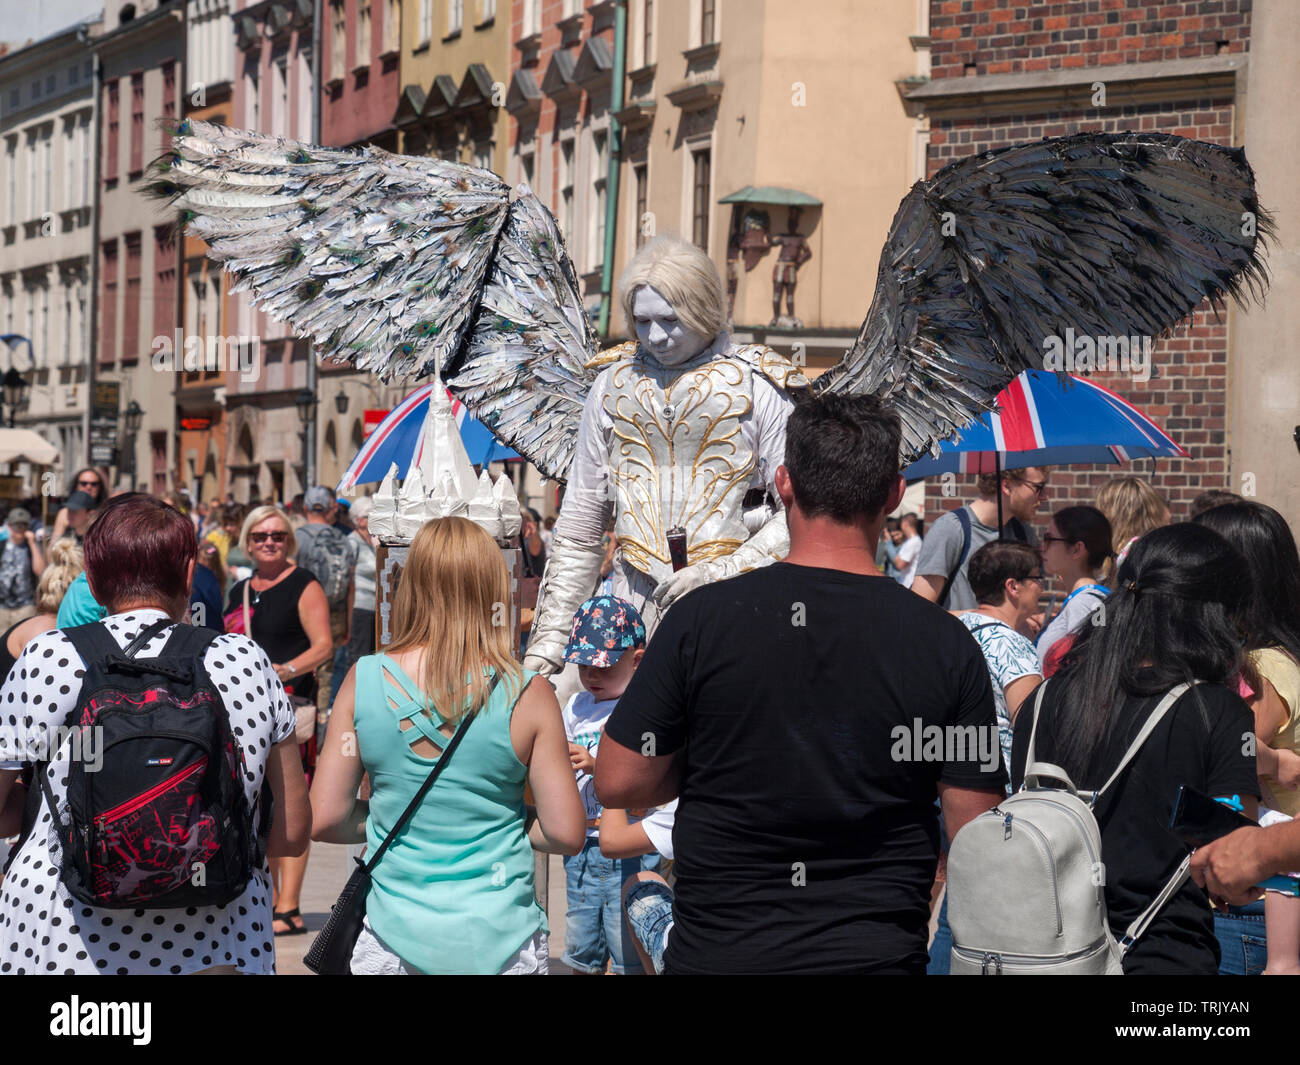 Musicien ambulant / Street performer habillé comme un ange avec des ailes, une énorme foule autour de lui l'attente pour prendre des photos. Arts de la rue, Banque D'Images